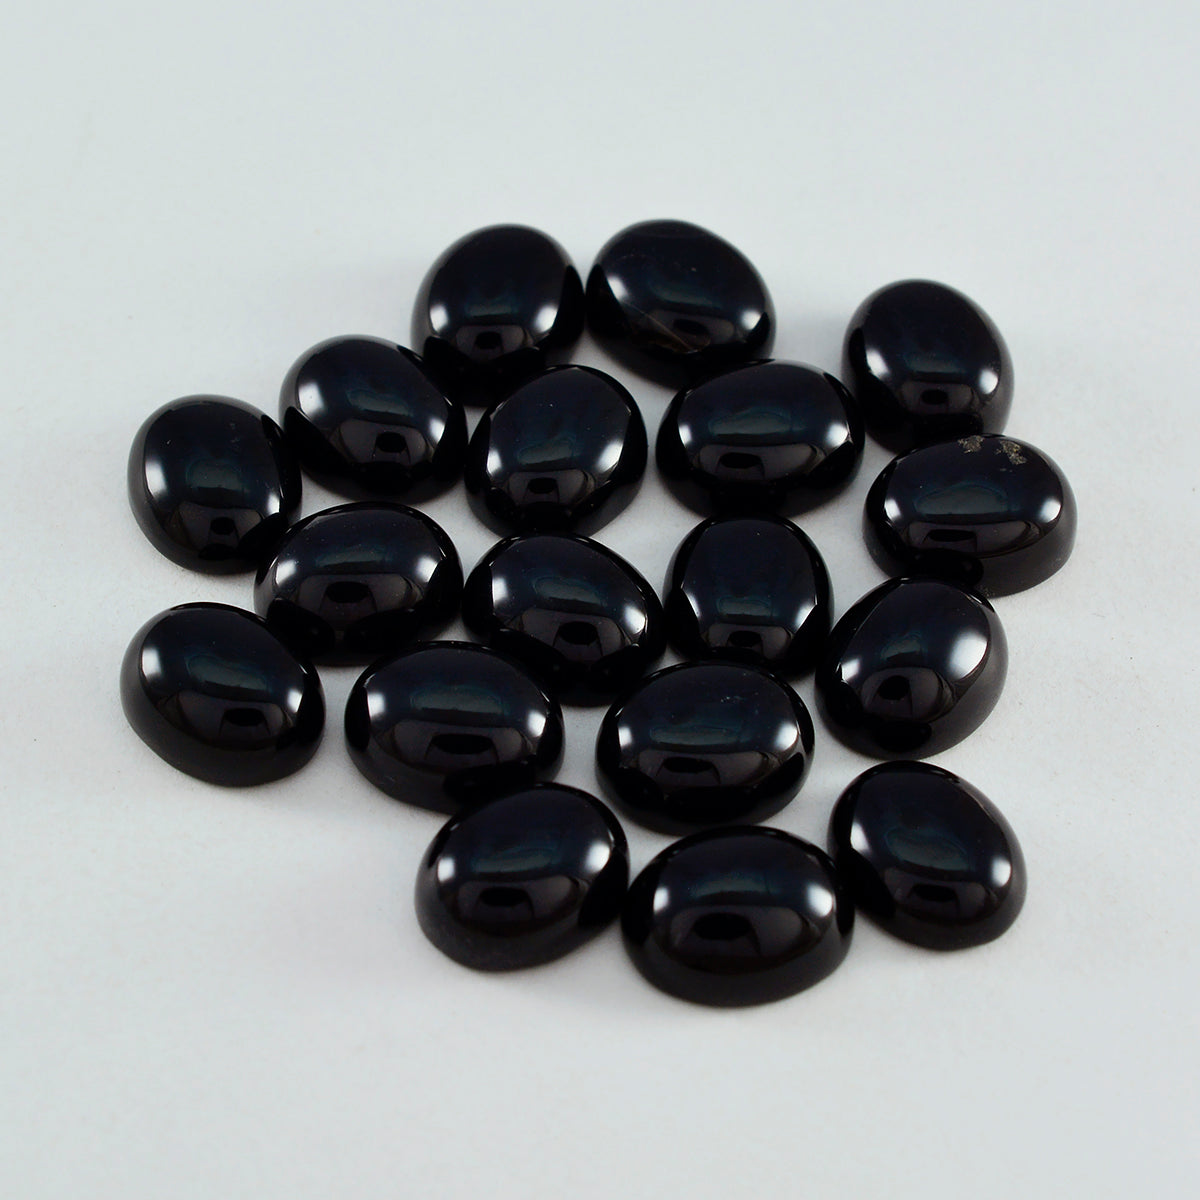 Riyogems 1 pieza cabujón de ónix negro 6x8 mm forma ovalada piedra preciosa de excelente calidad